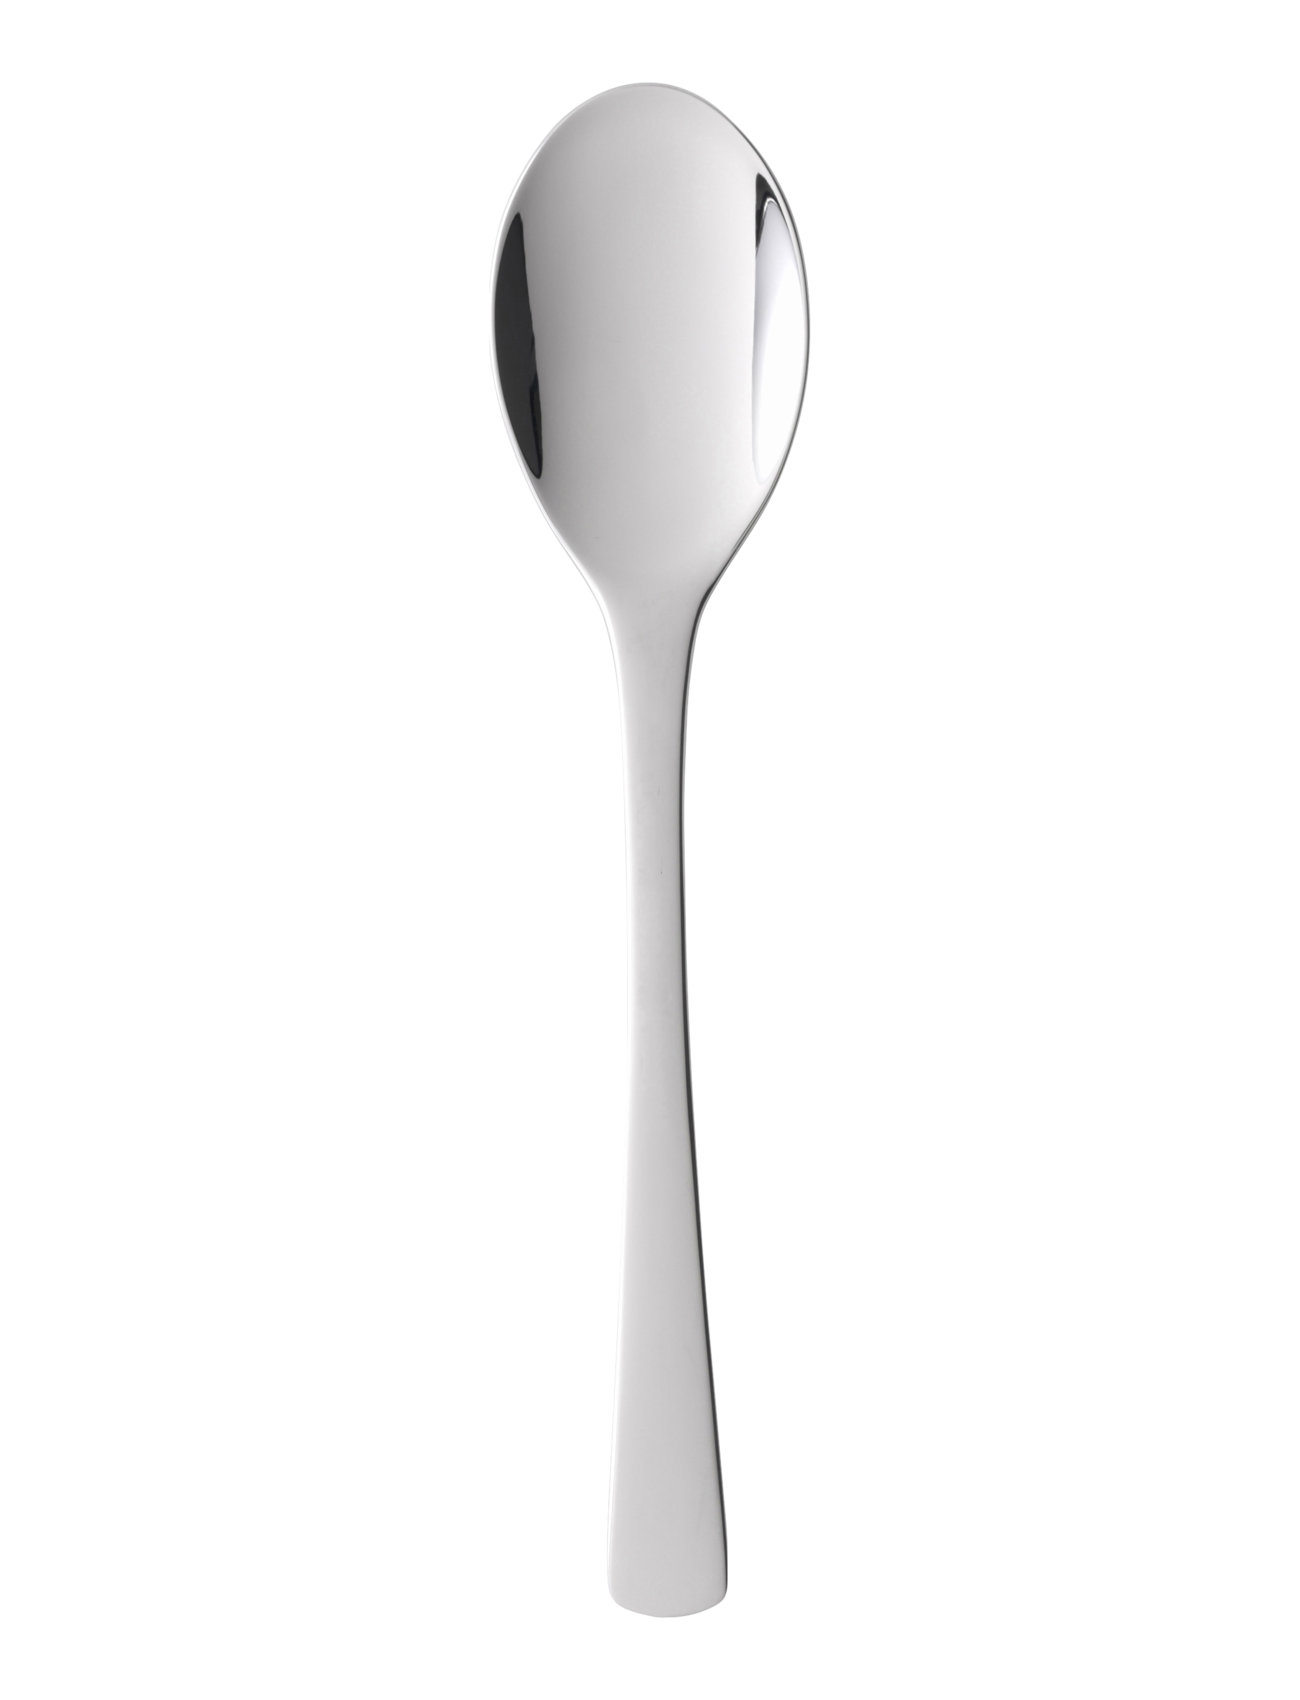 Spiseske Steel Line 19,8 Cm Blank Stål Home Tableware Cutlery Spoons Table Spoons Silver Gense